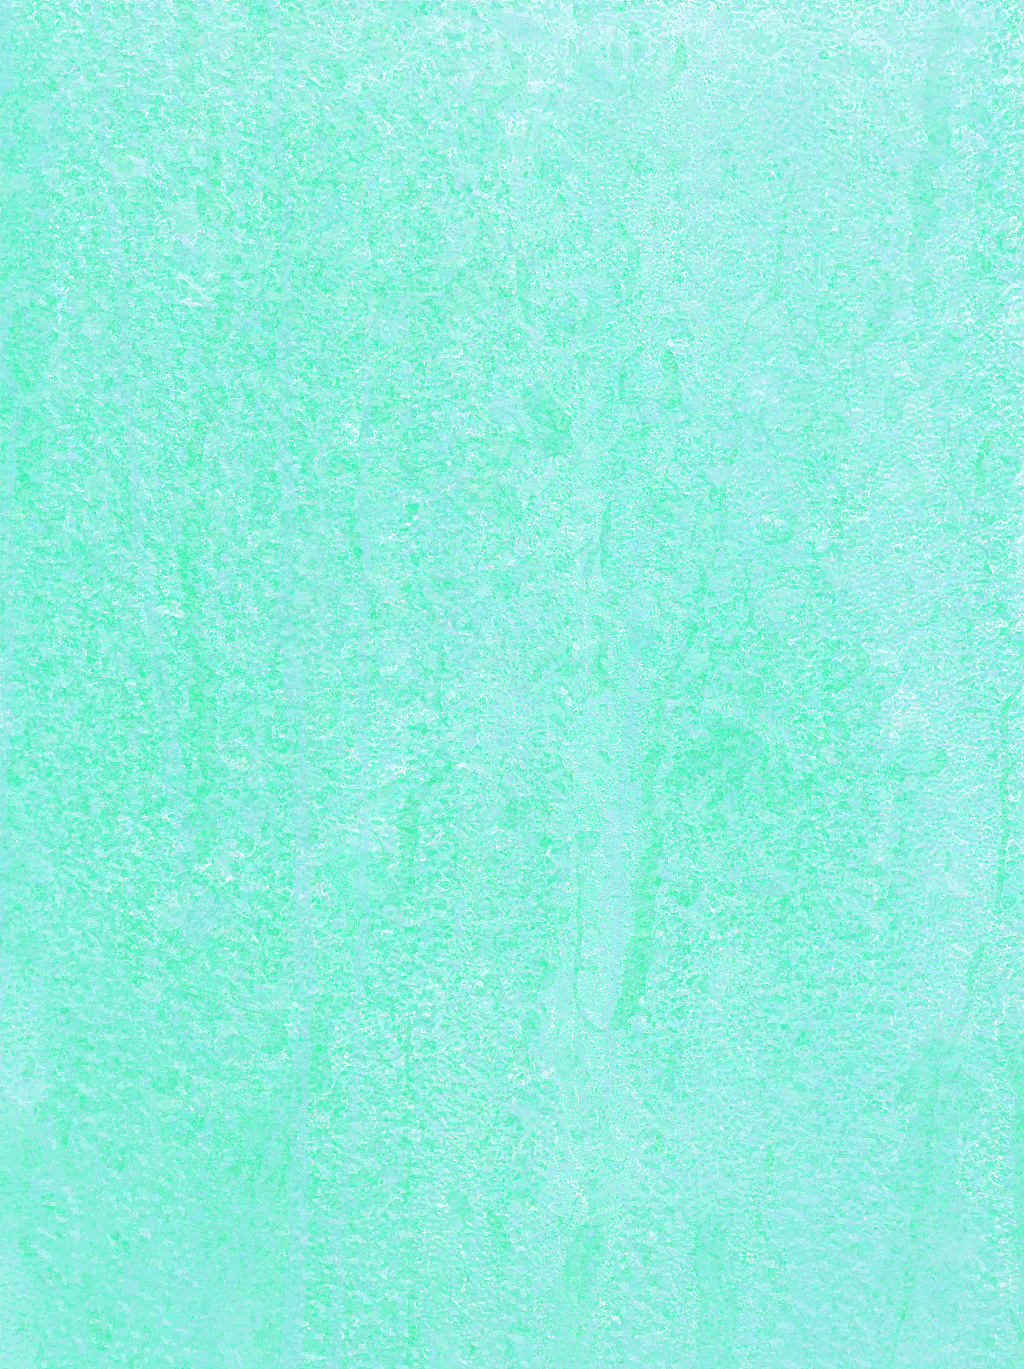 蓝绿纯色手机壁纸图片